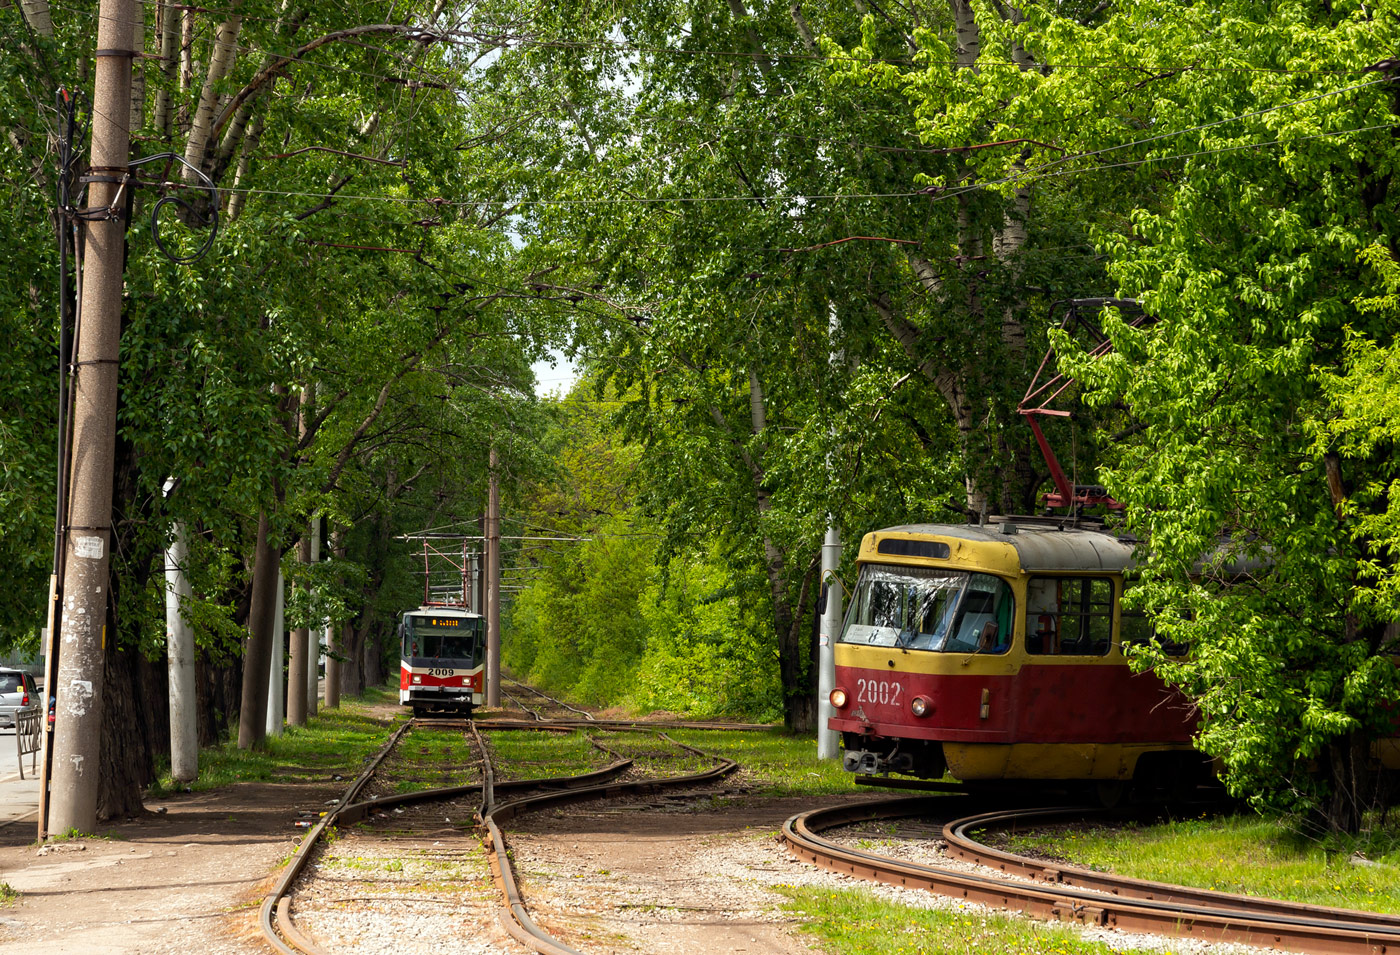 Ufa — Terminals and loops (tramway); Ufa — Tramway network — North